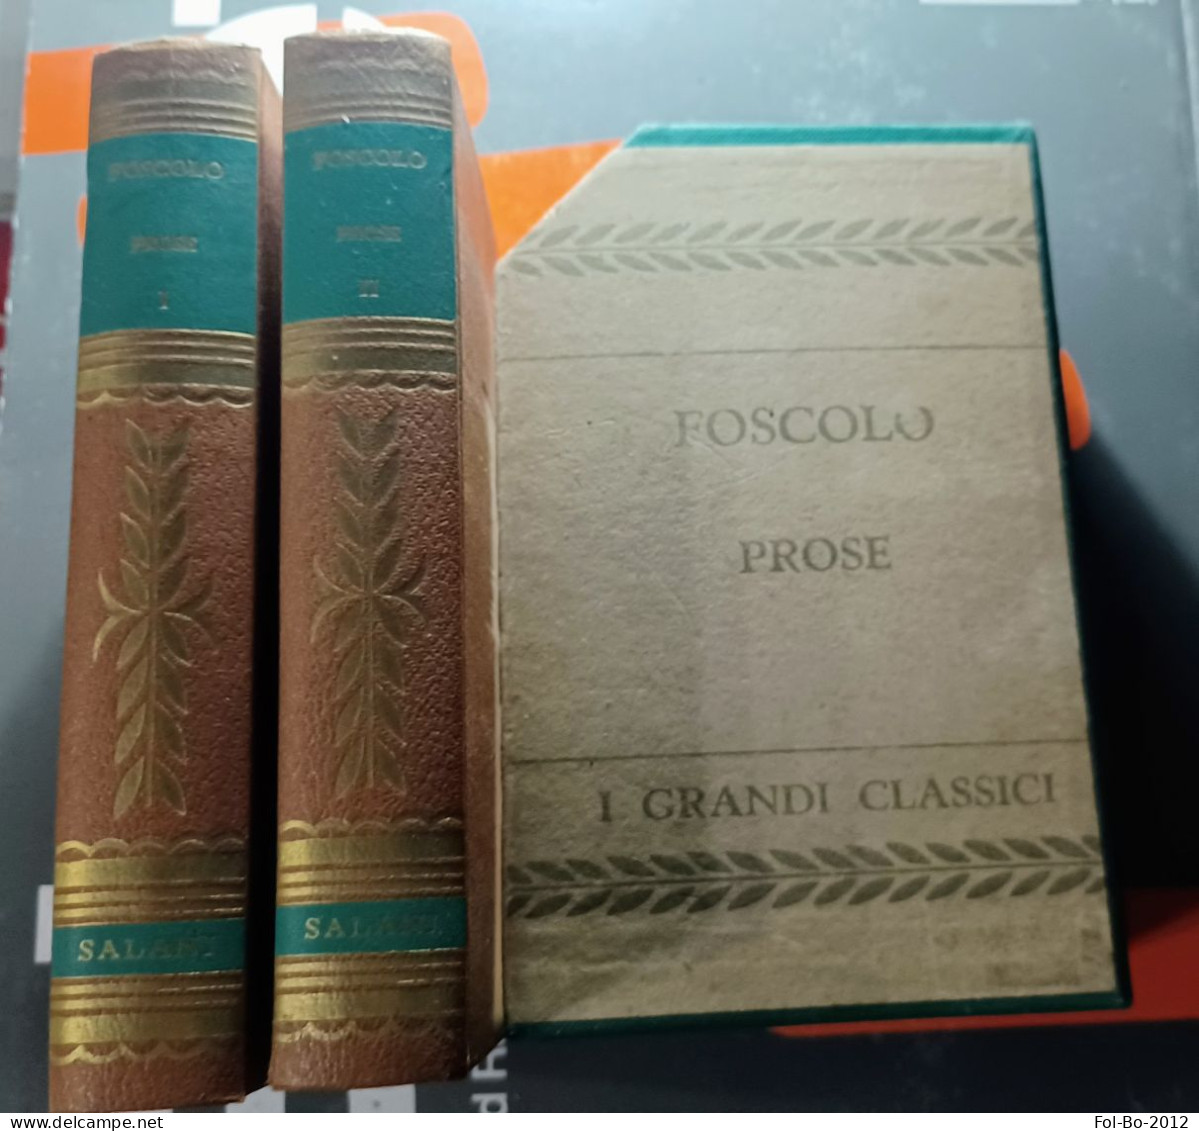 Foscolo Prose Salani Editore Anno ? - Poesie